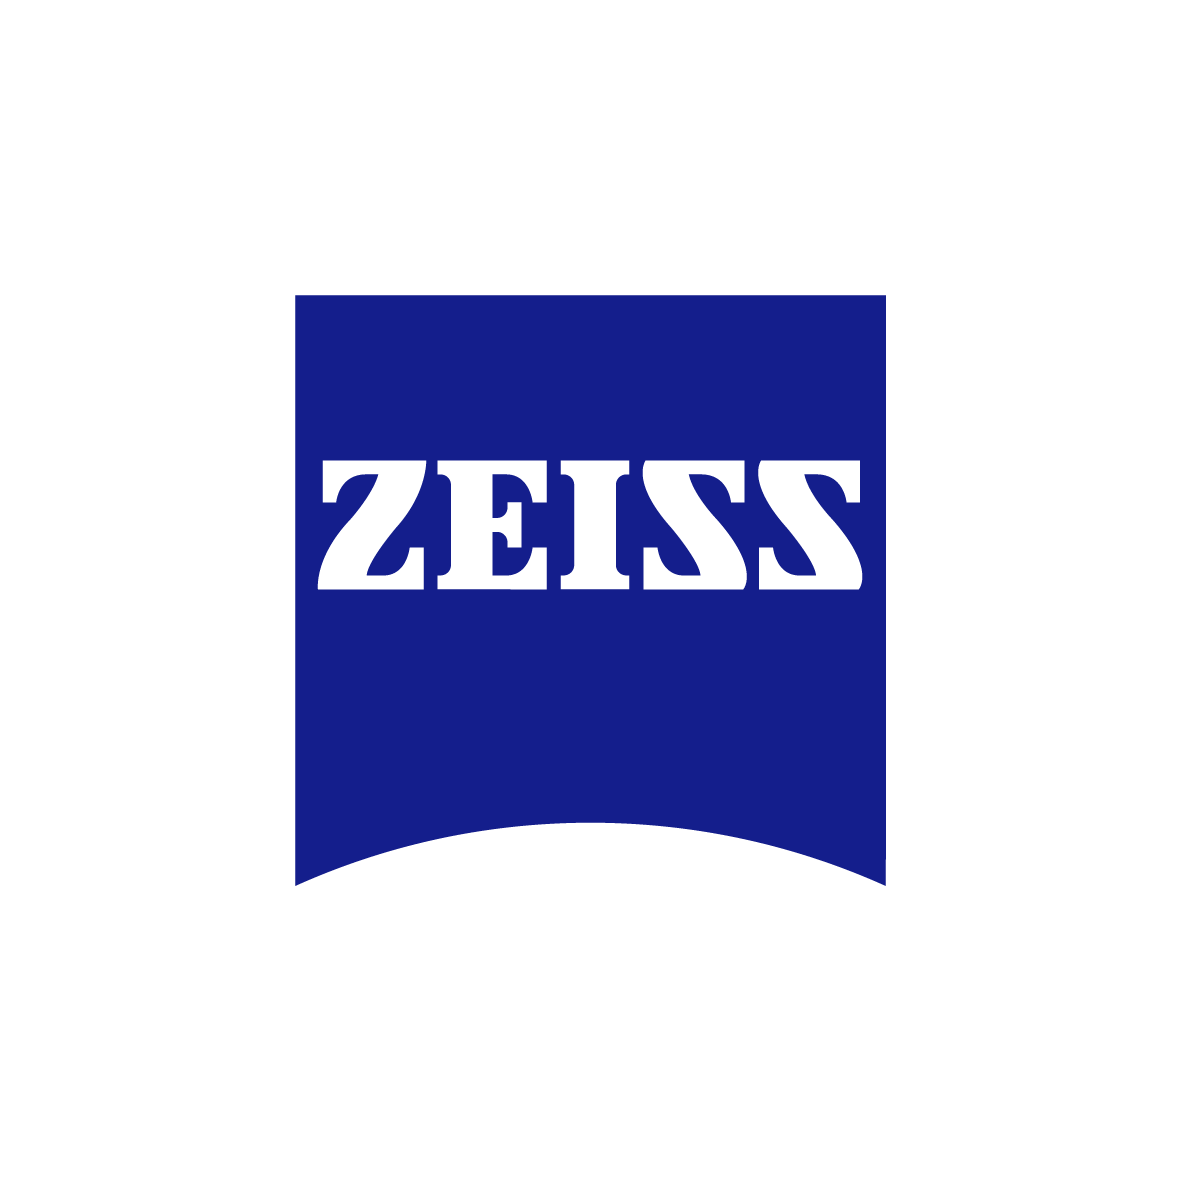 Zeiss Logo - ZEISS Logo